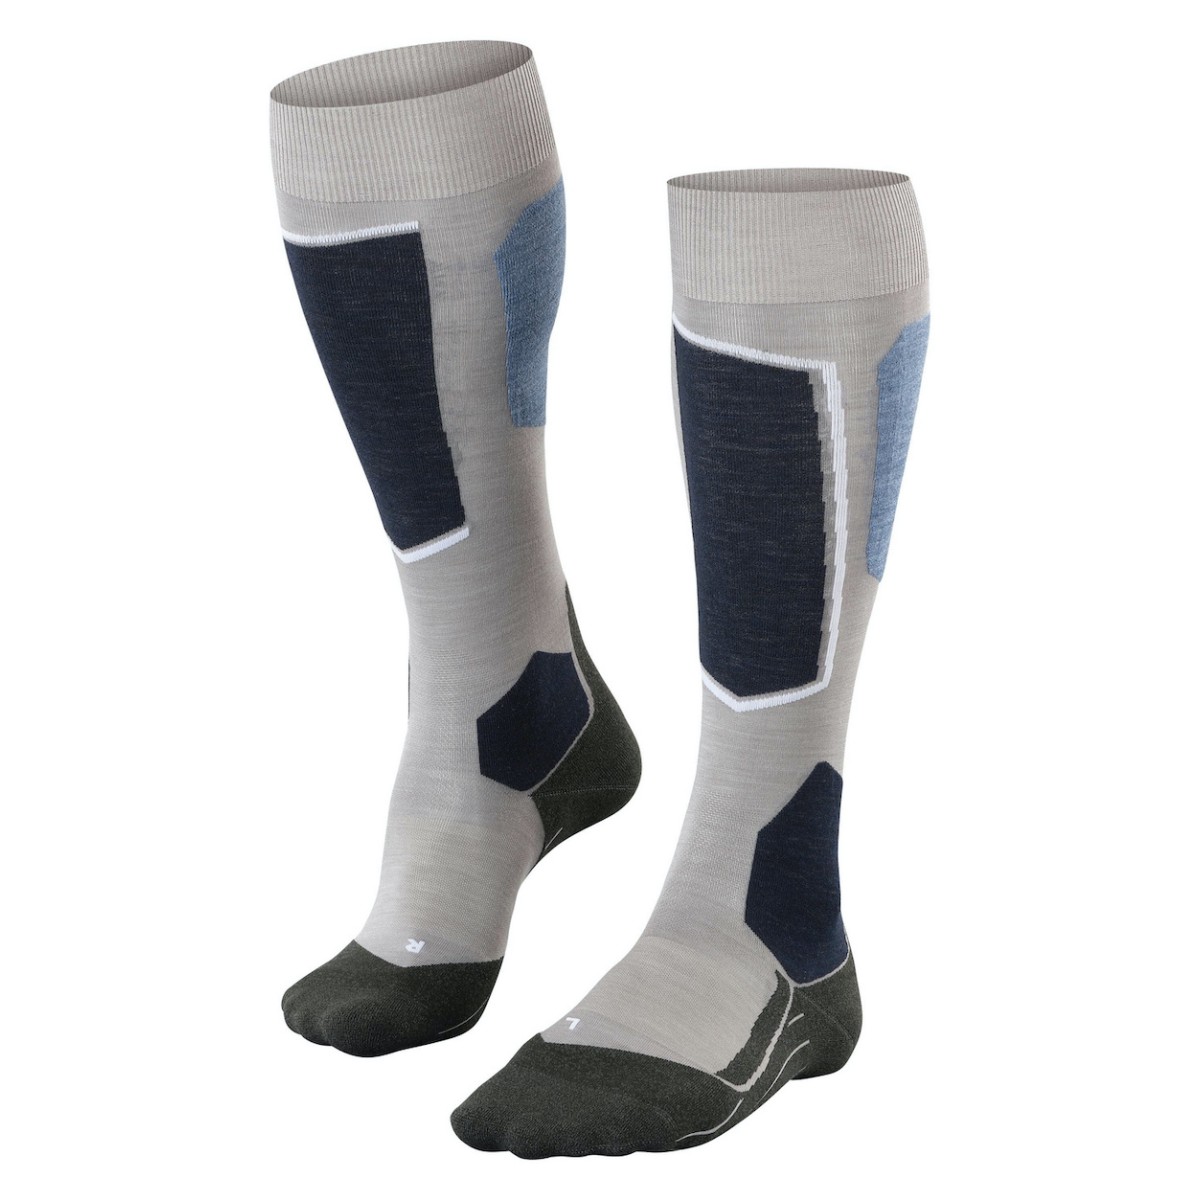 FALKE SK6 WOMEN socks - blue/grey